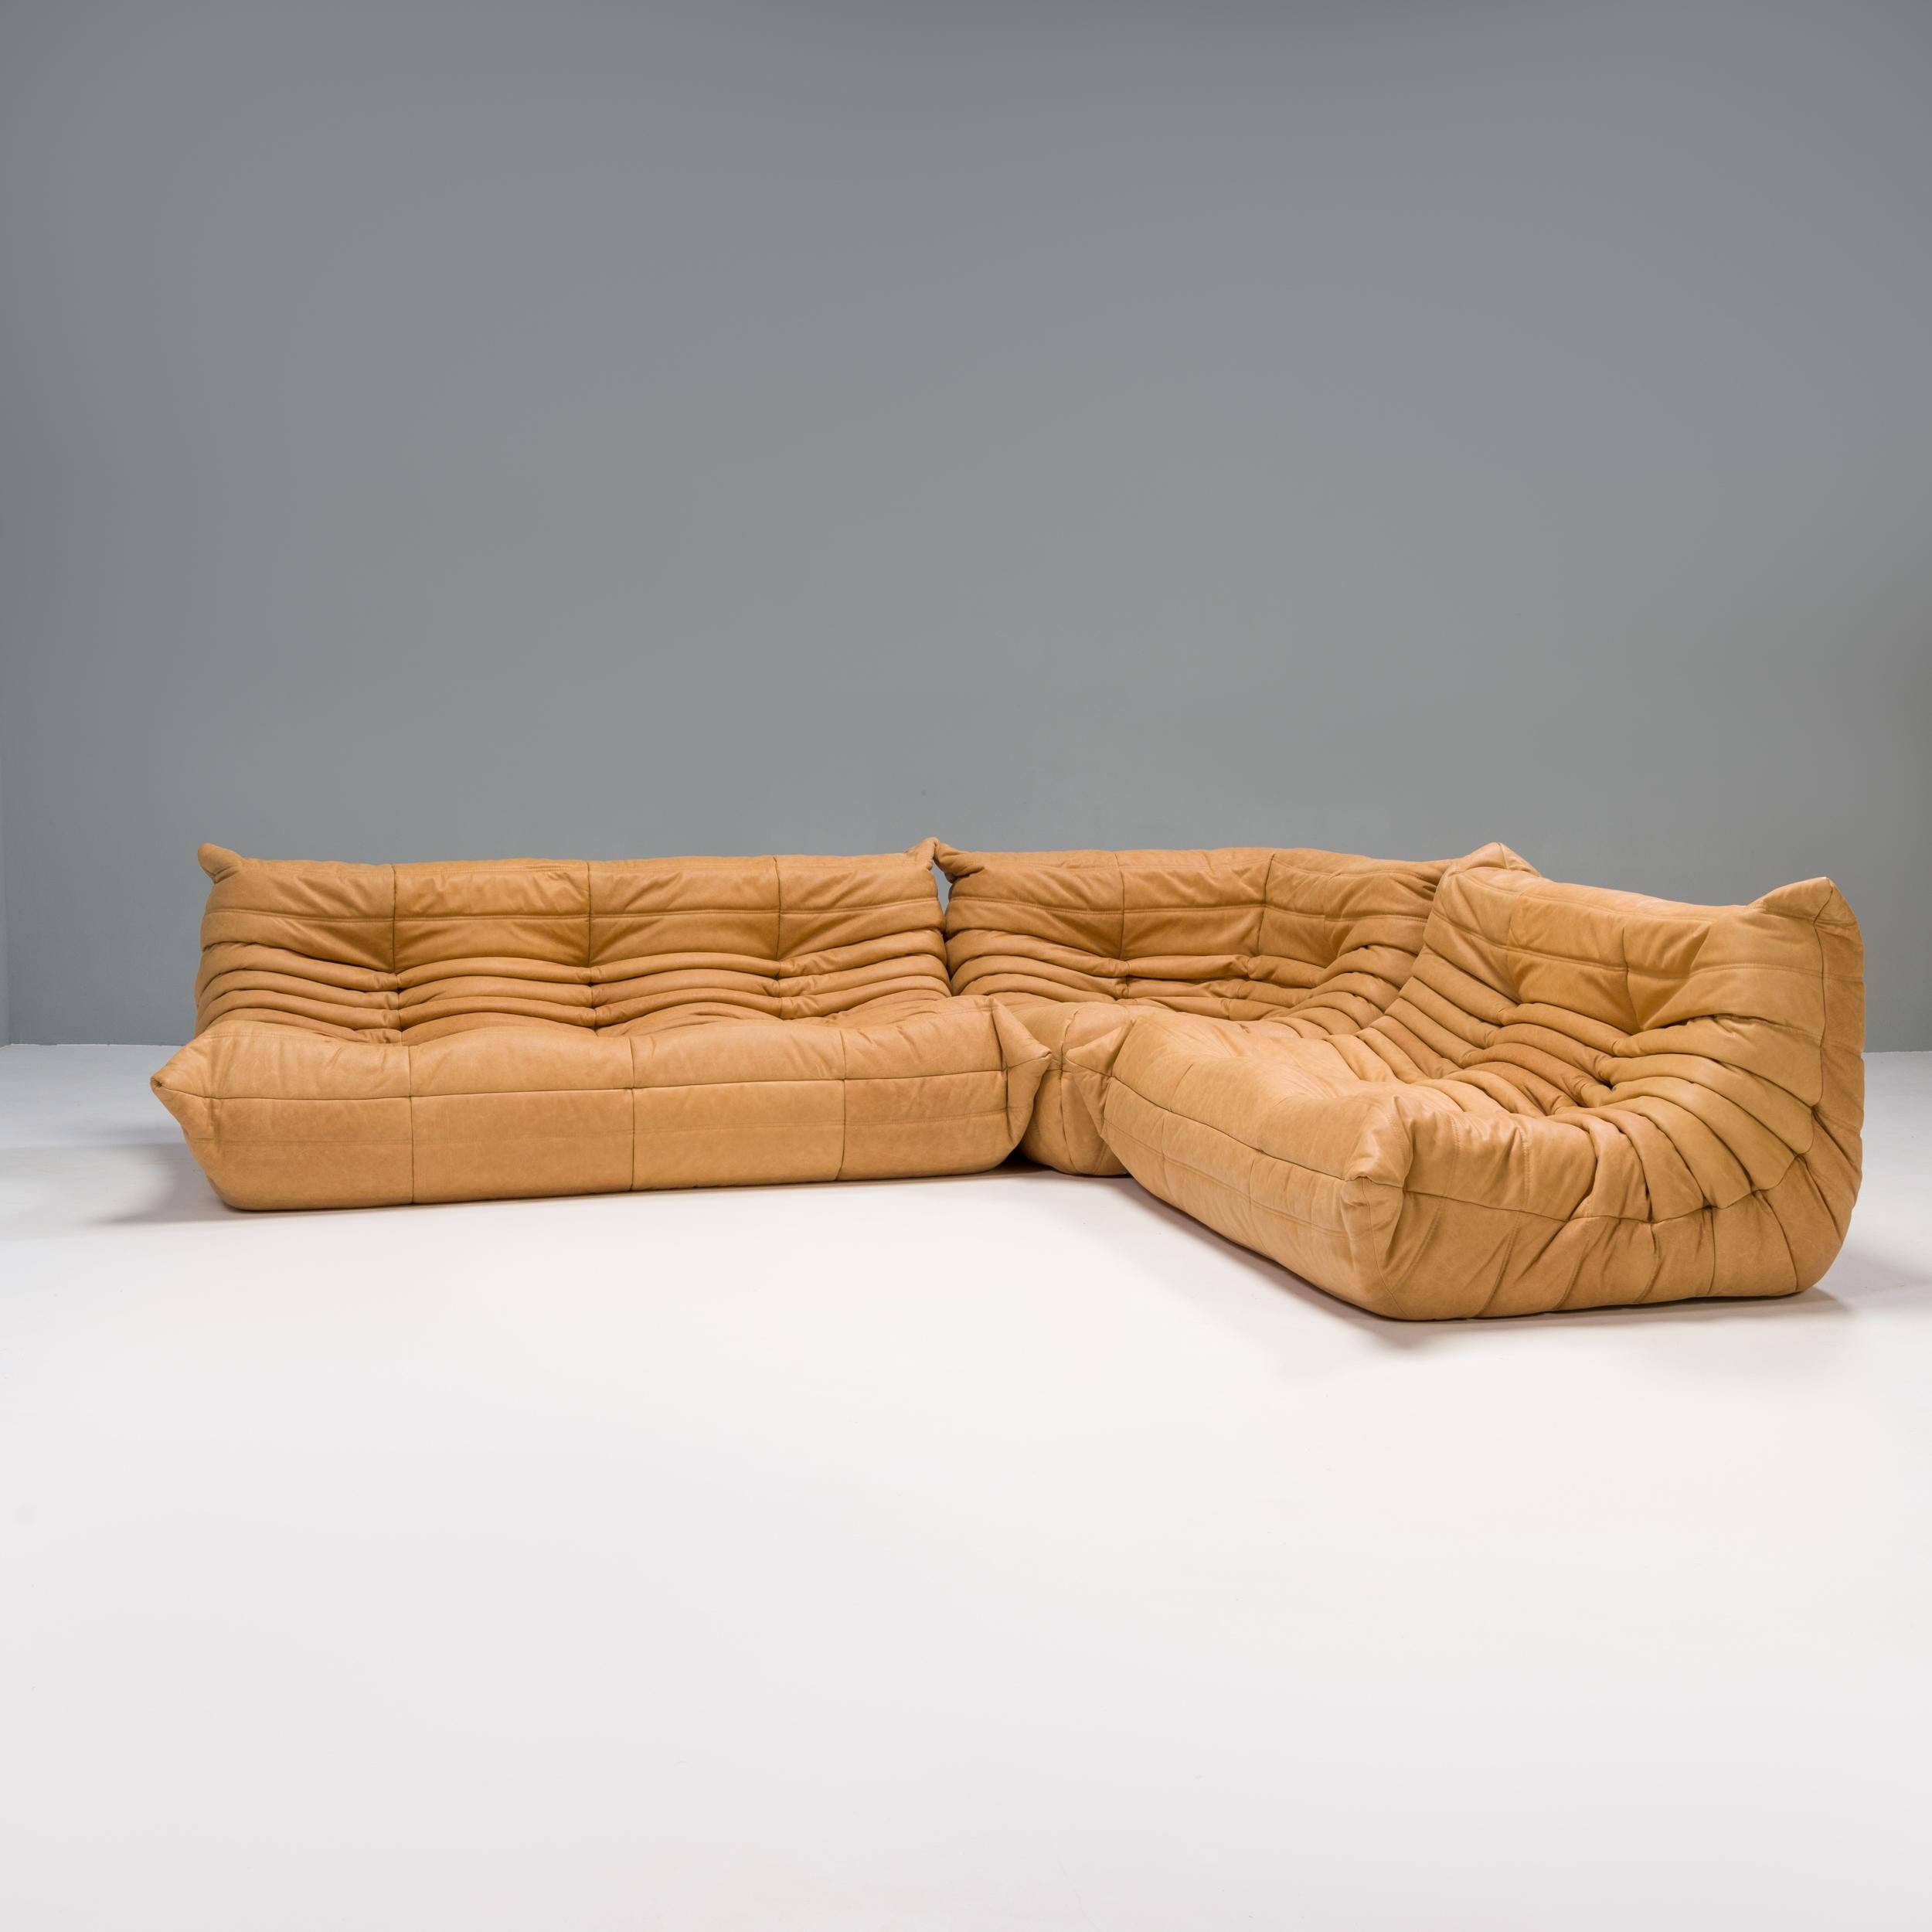 L'ensemble canapé Togo orange, conçu à l'origine par Michel Ducaroy pour Ligne Roset en 1973, est devenu un classique du design du milieu du siècle.

Les canapés ont été nouvellement rembourrés dans un tissu souple et doux en cuir camel. Fabriquée